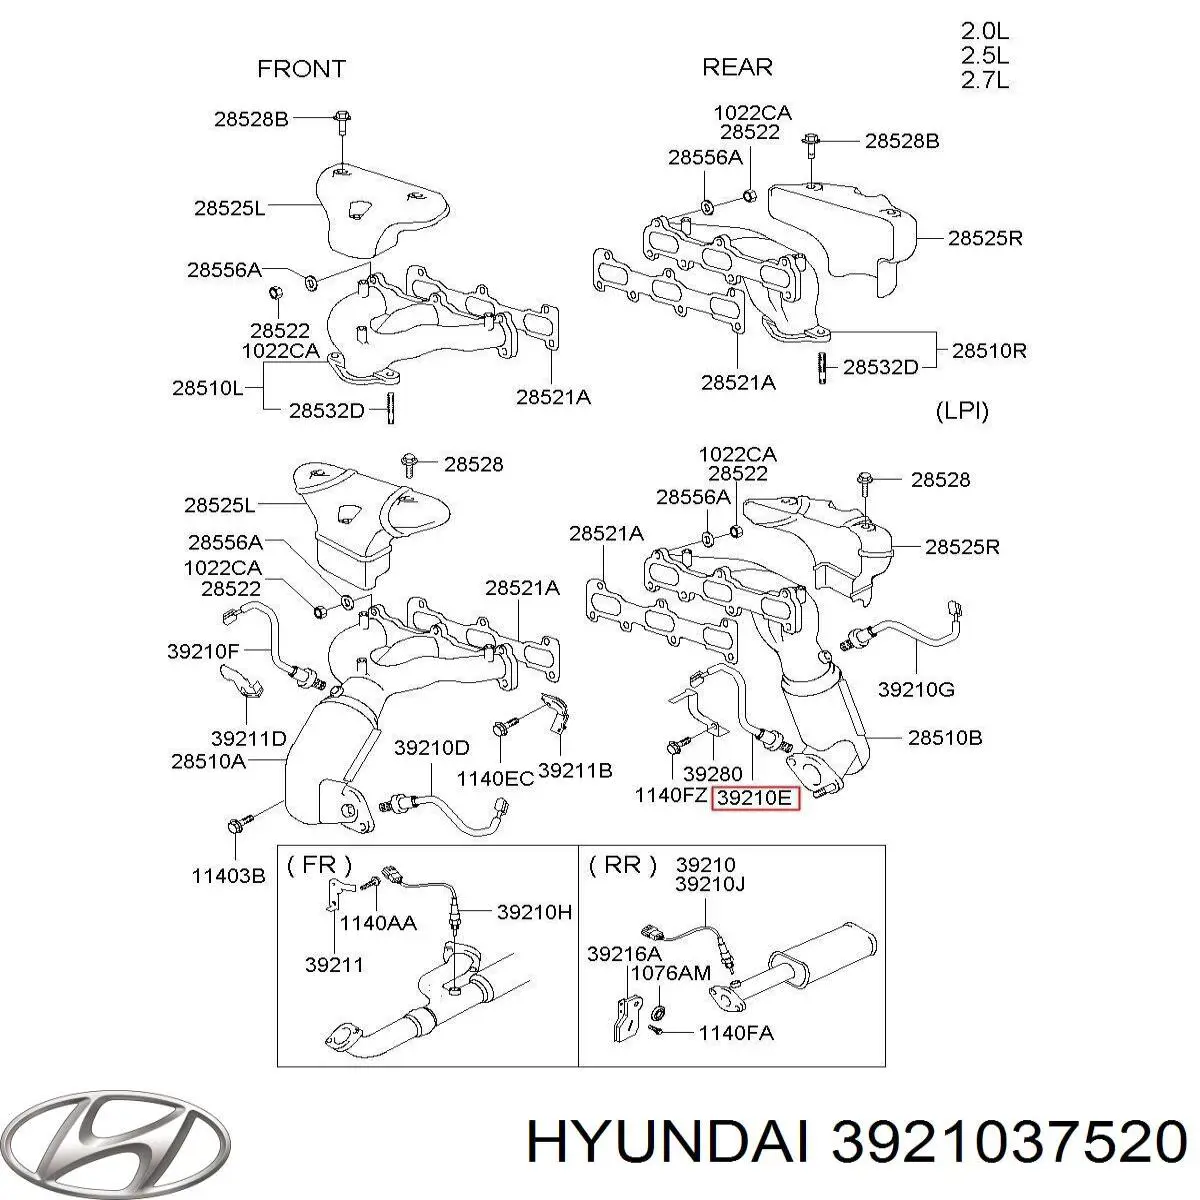 Sonda Lambda, Sensor de oxígeno despues del catalizador derecho para Hyundai Trajet (FO)